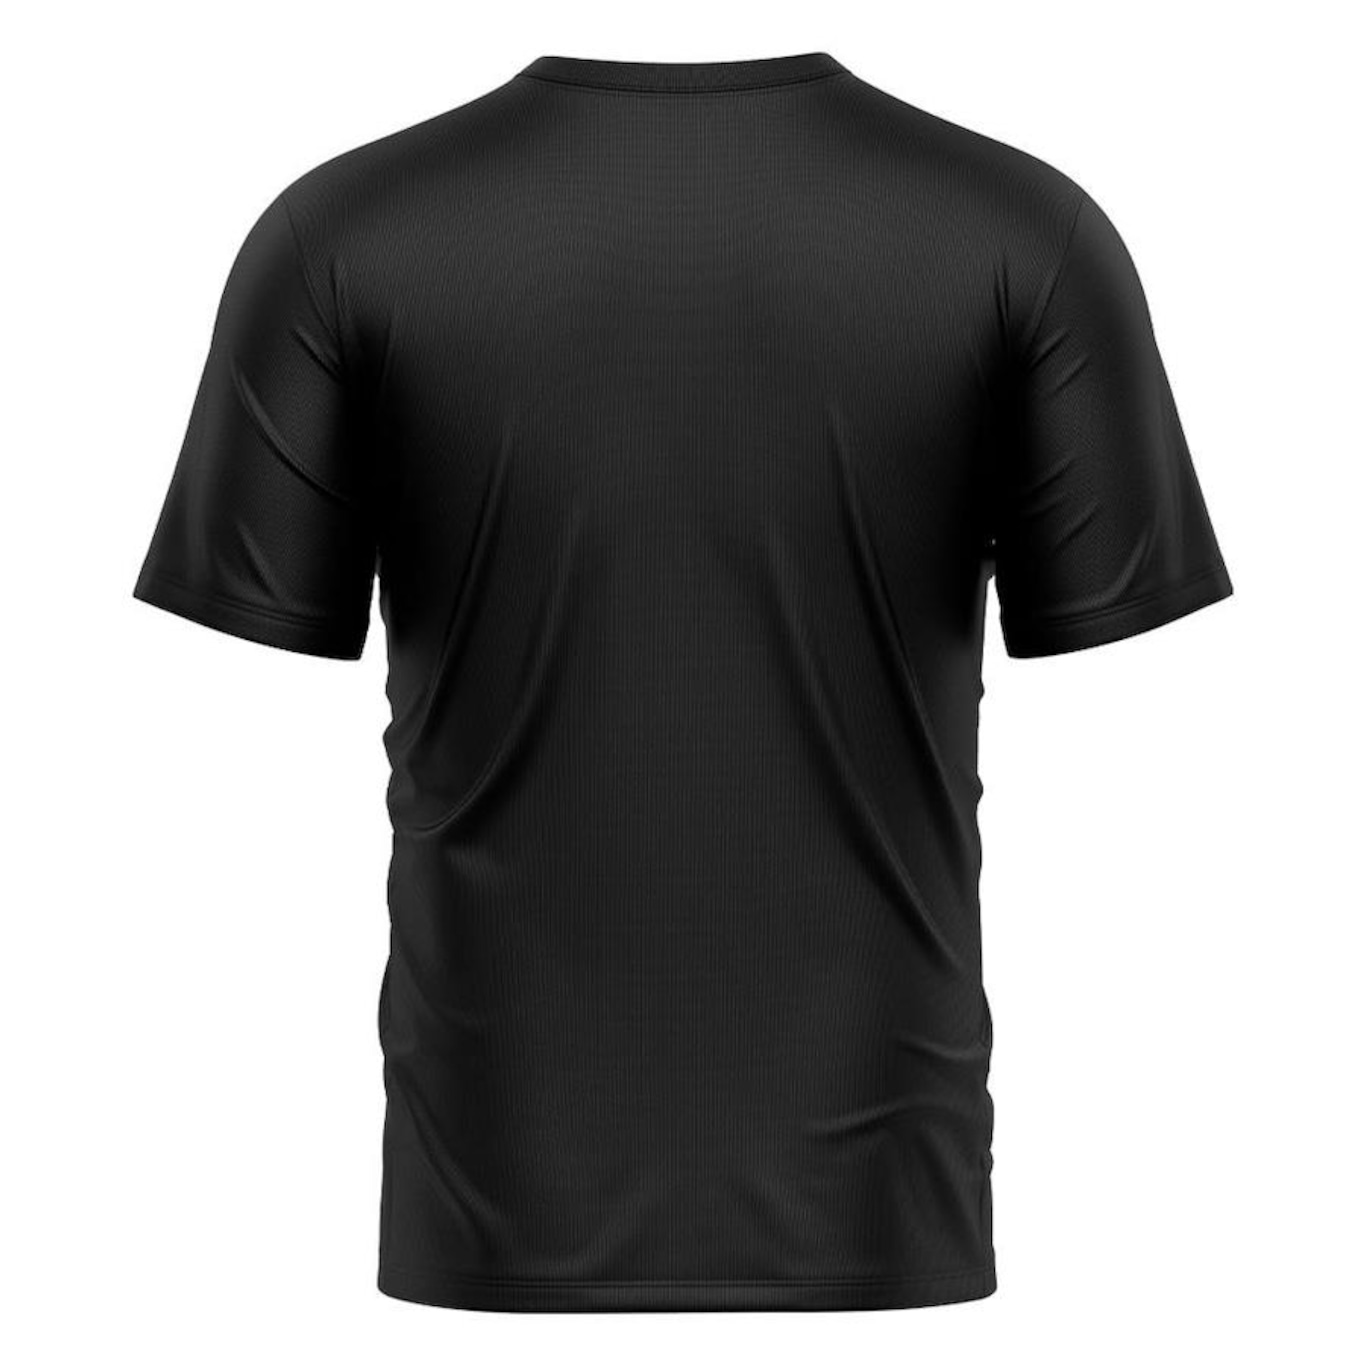 Camiseta Whats Wear Lisa Dry Fit com Proteção Solar UV - Masculina - Foto 2